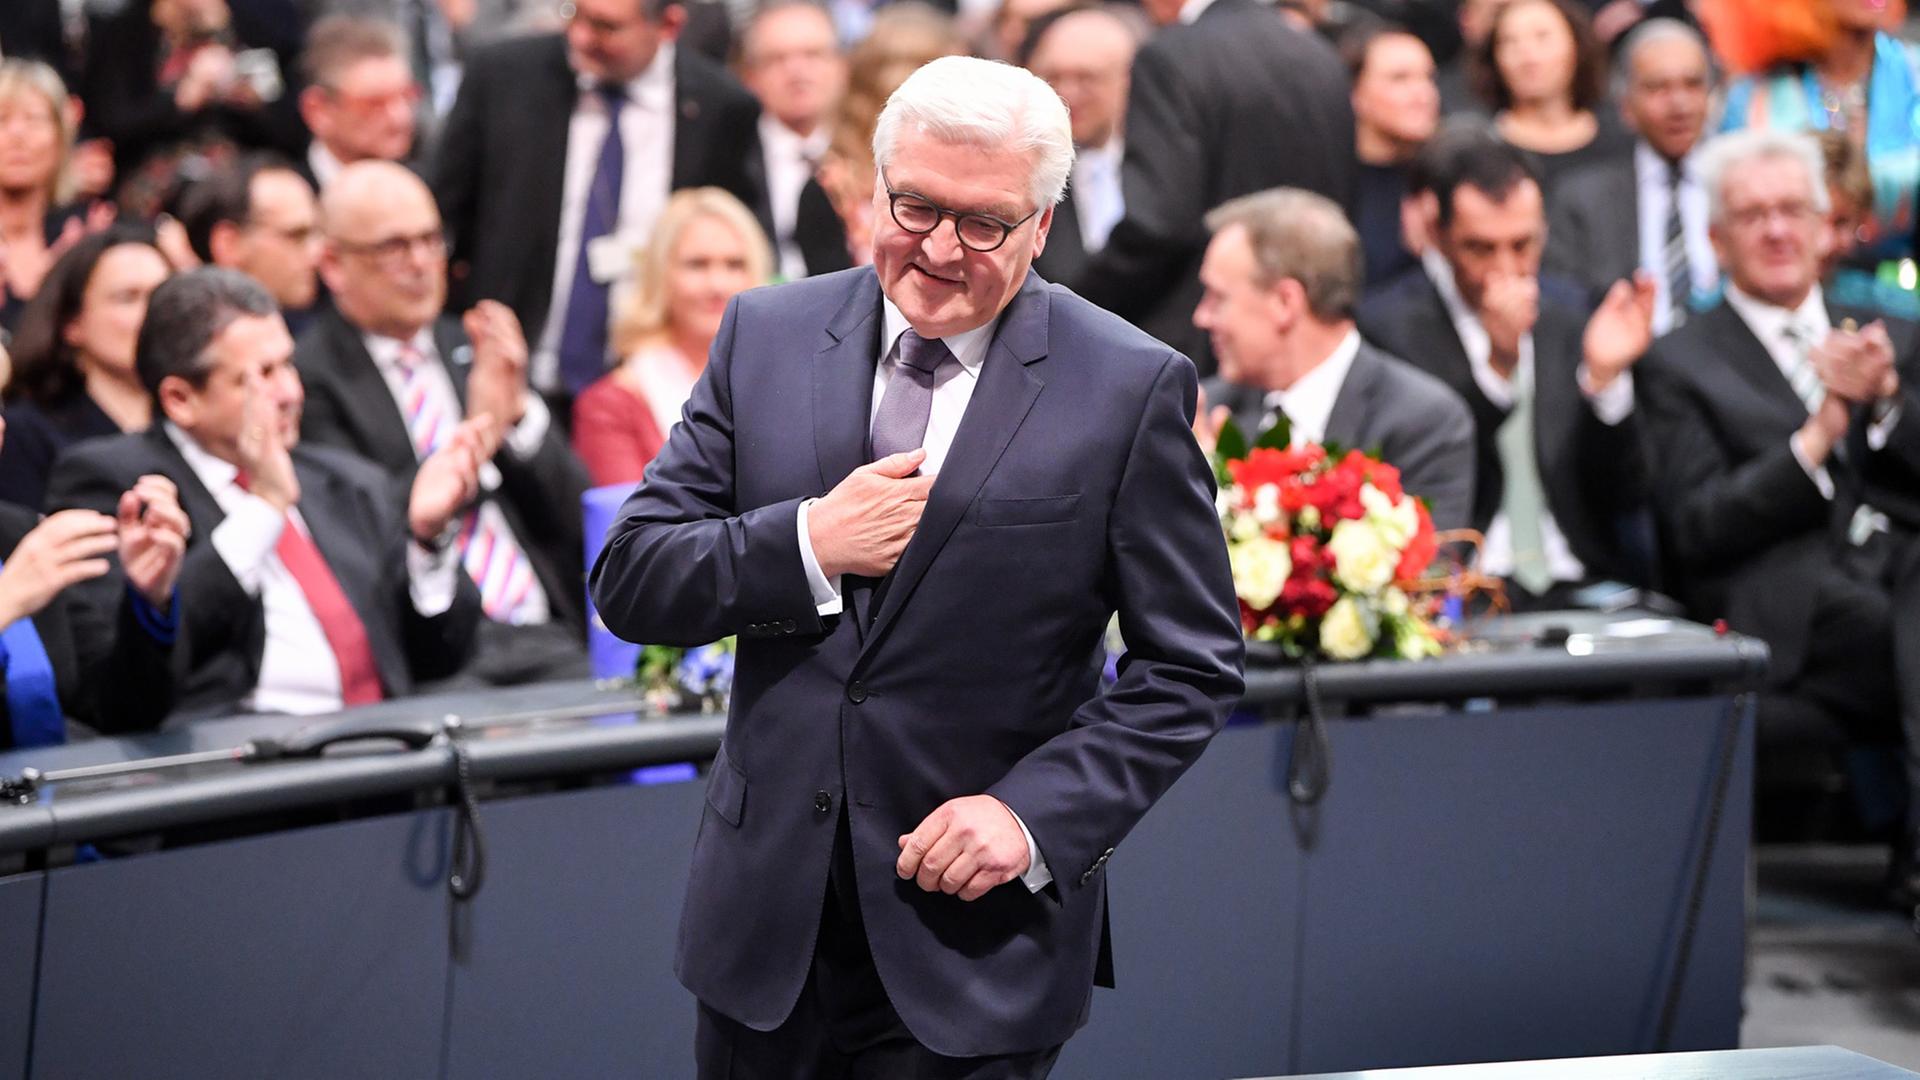 Der designierte Bundespräsident Frank-Walter Steinmeier, SPD, geht am 12. Februar 2017 im Reichstag in Berlin nach der Wahl zum Bundespräsidenten zum Rednerpult.